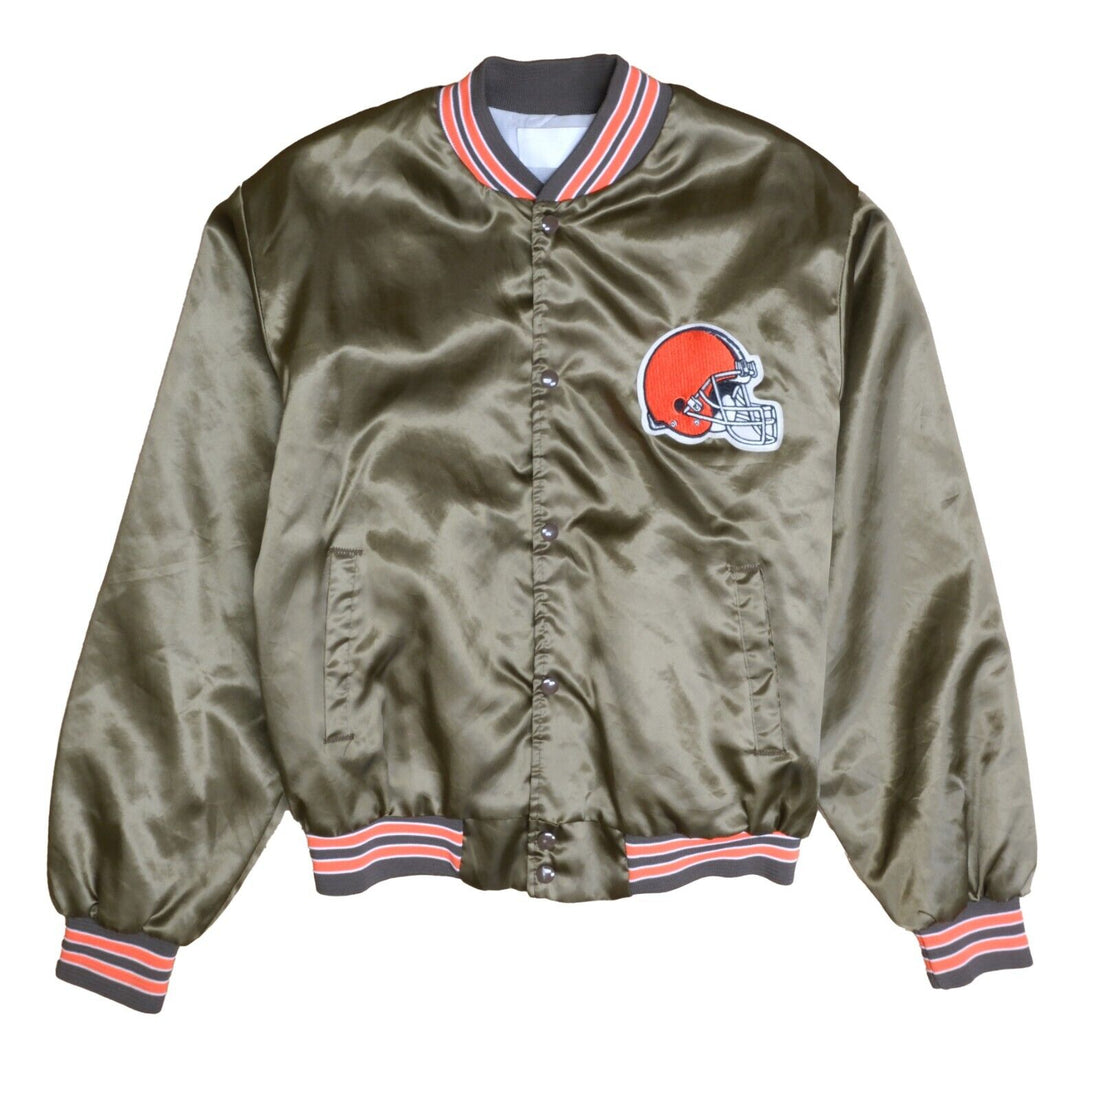 Vintage Cleveland Browns Satin Bomber Jacket Size Large 80s 90s NFL